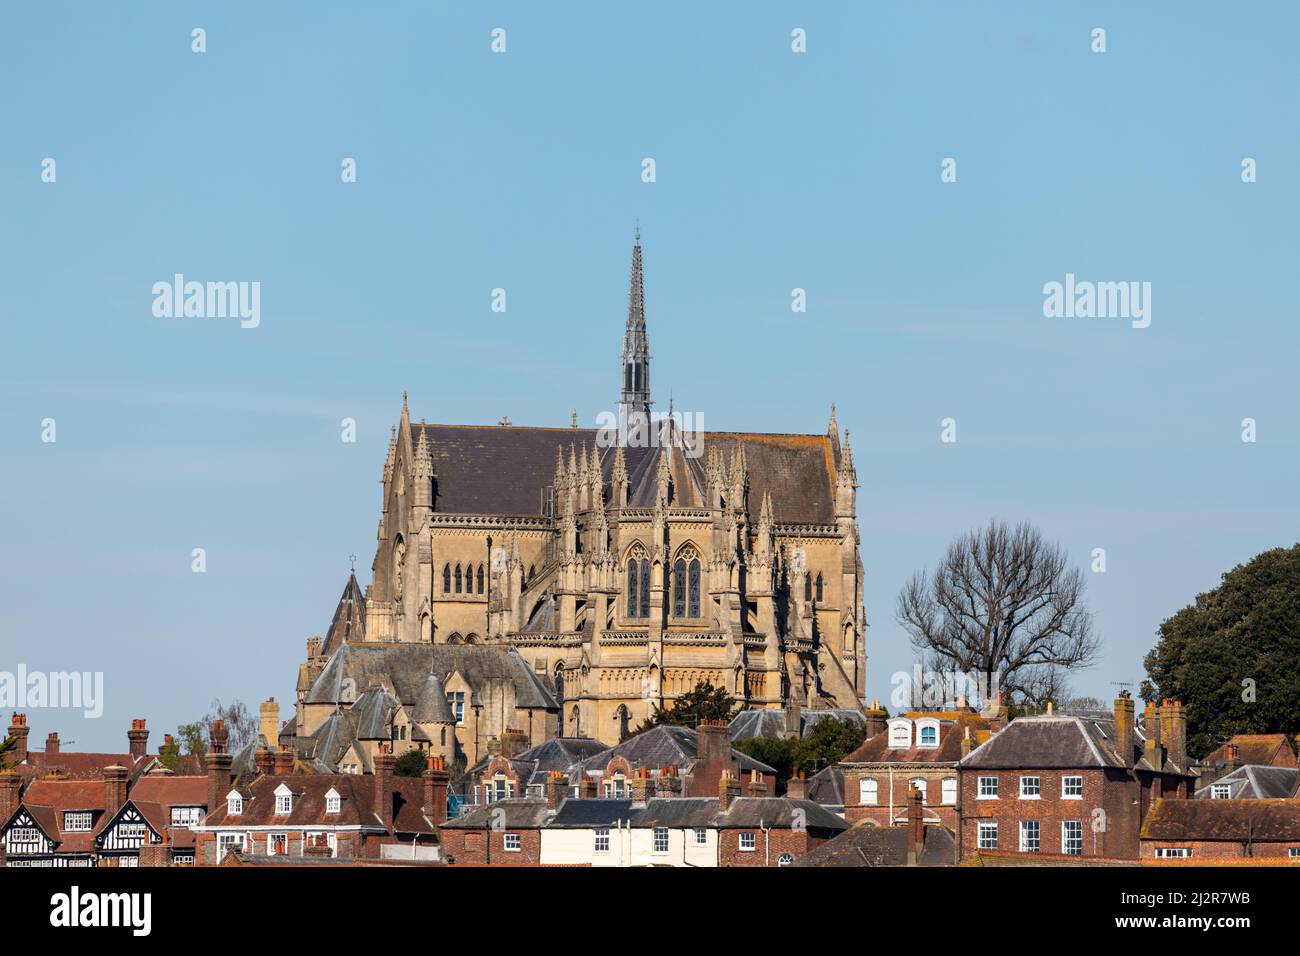 Vue sur la ville de marché West Sussex d'Arundel. La cathédrale s'élève au-dessus des maisons en contrebas. Banque D'Images